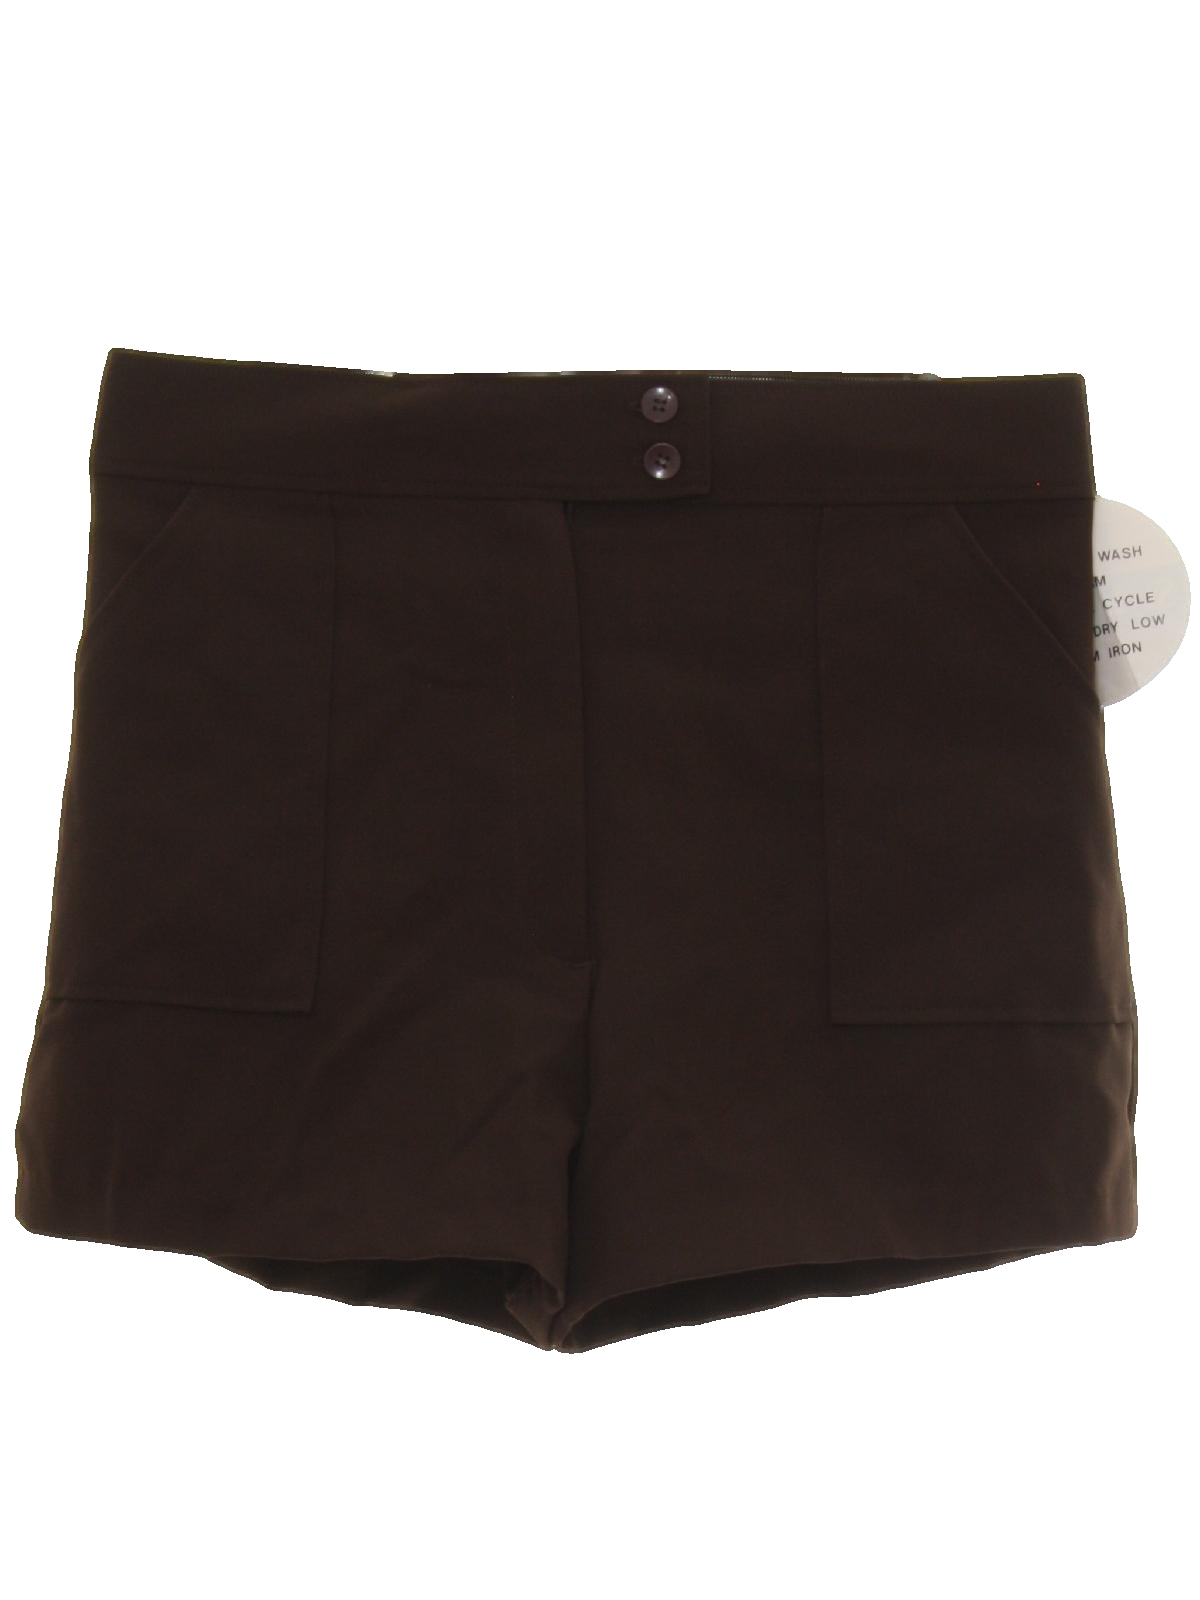 Retro Eighties Shorts: 80s -Kmart- Womens dark brown background